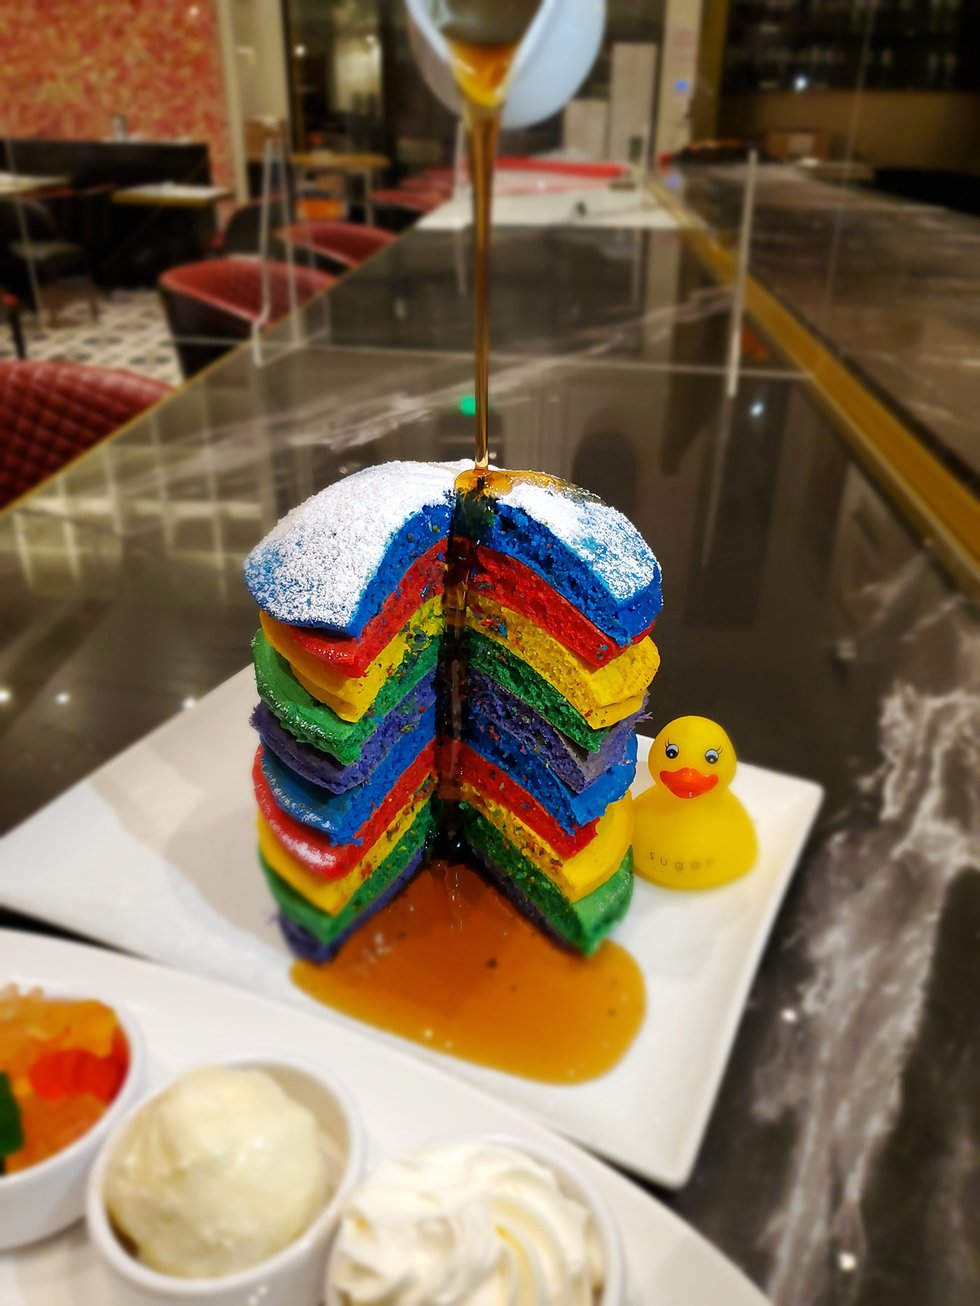 Rainbow Pancakes At The Sugar Factory